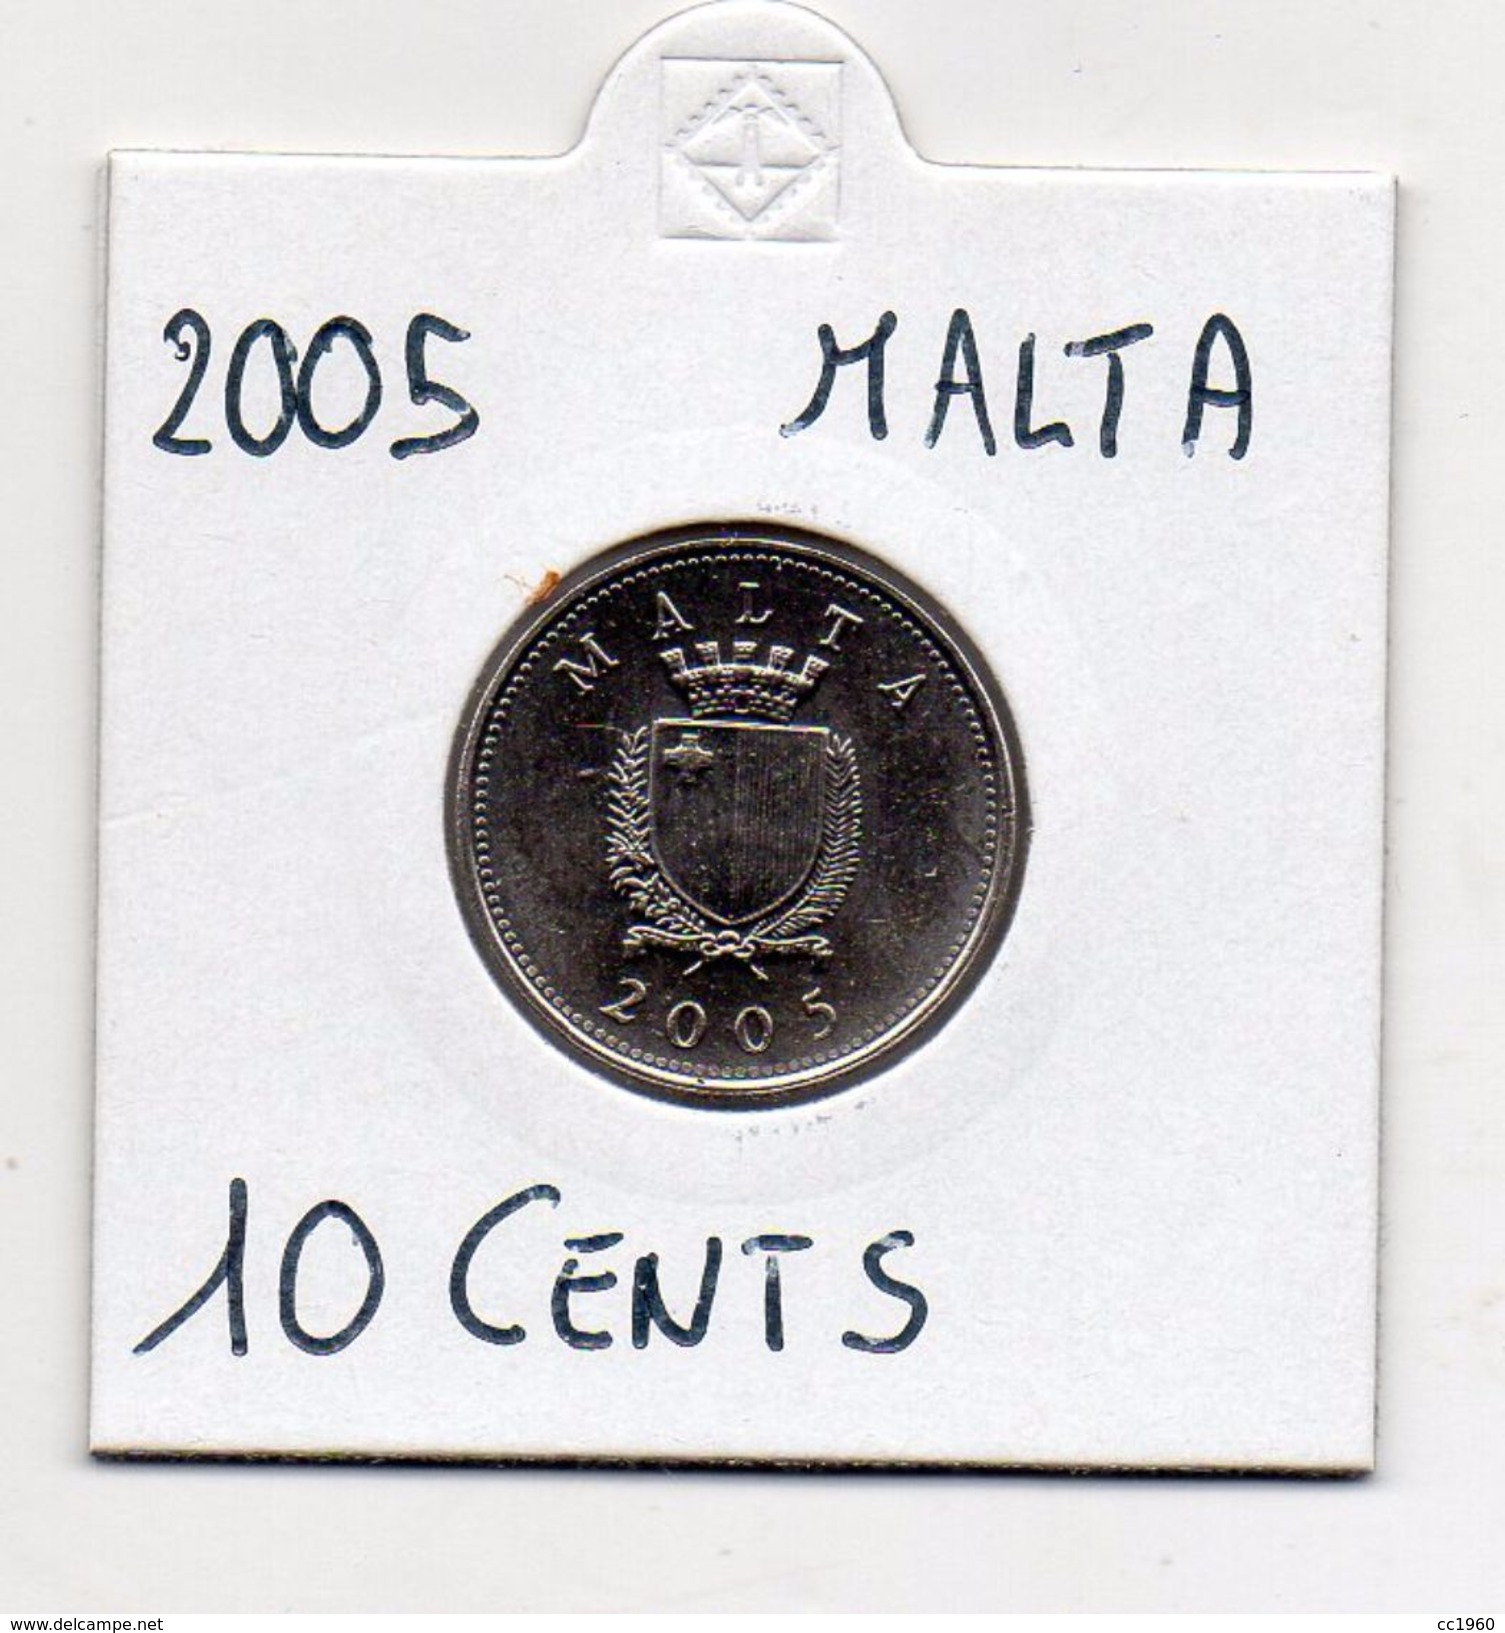 Malta - 2005 - 10 Centesimi - Vedi Foto - (MW337) - Malta